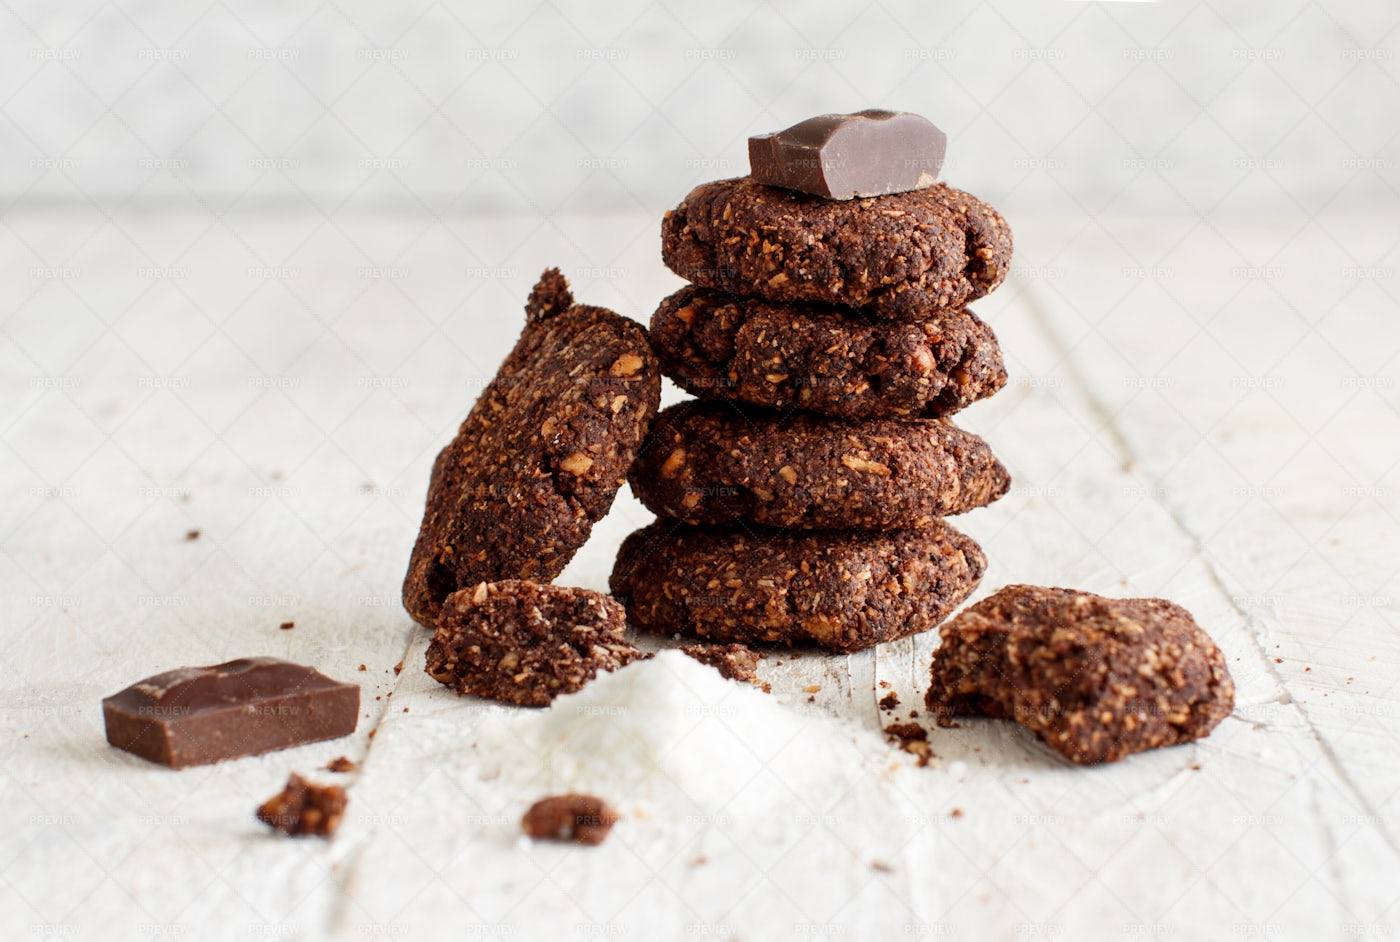 Keto Chocolate Cookies: Stock Photos